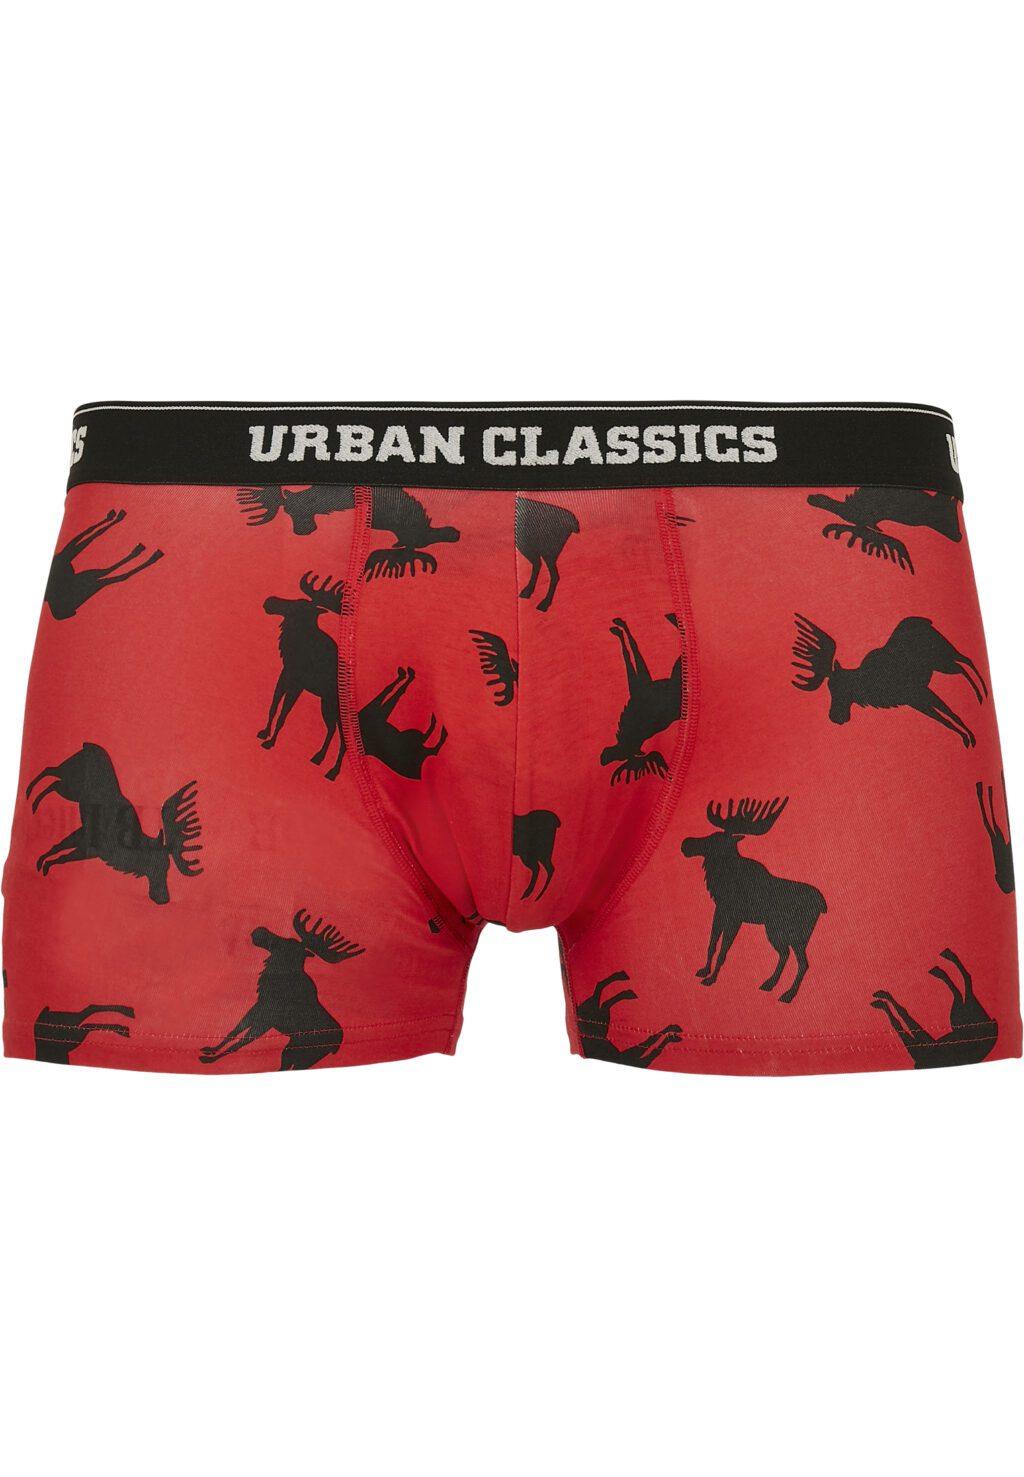 Urban Classics Boxer Shorts 3-Pack red plaid aop+moose aop+blk TB3839